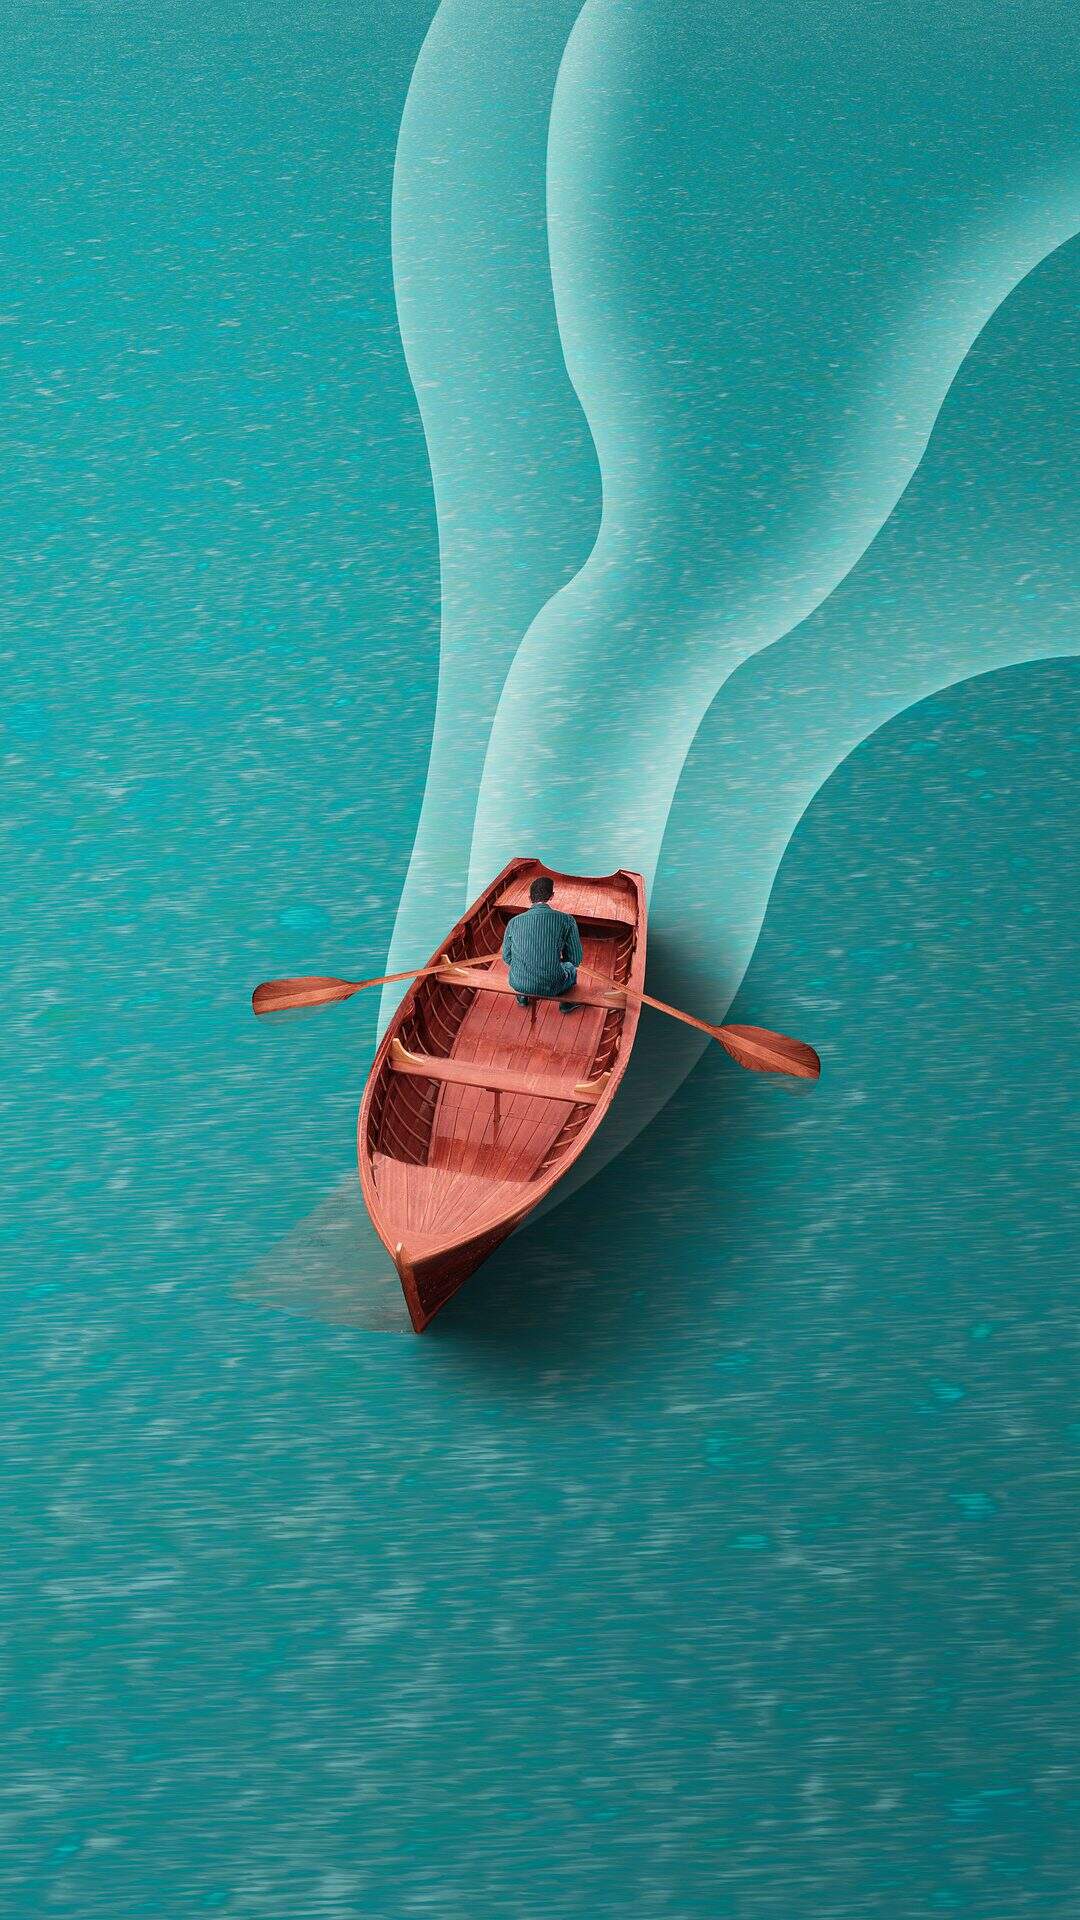 平静蔚蓝的湖面 一个划船的男子非主流插画手机壁纸图片